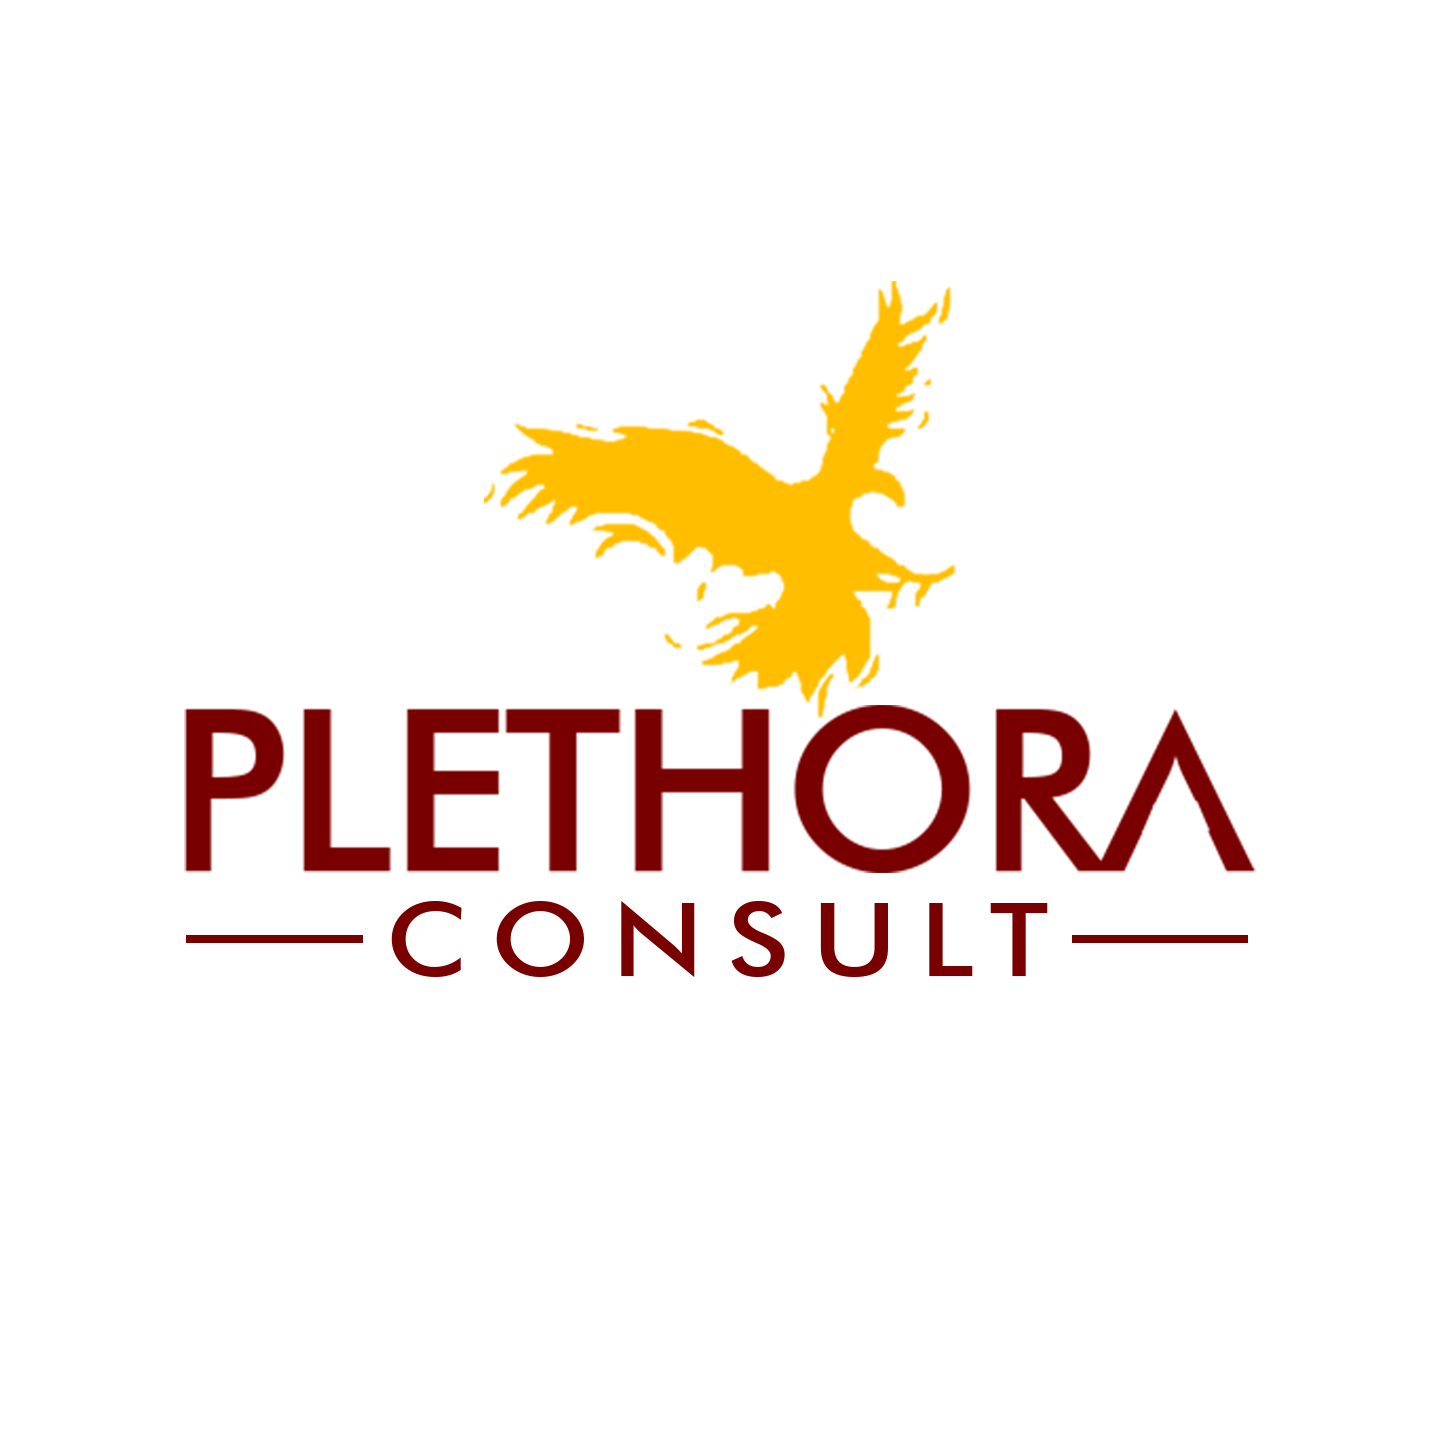 Plethora Consult